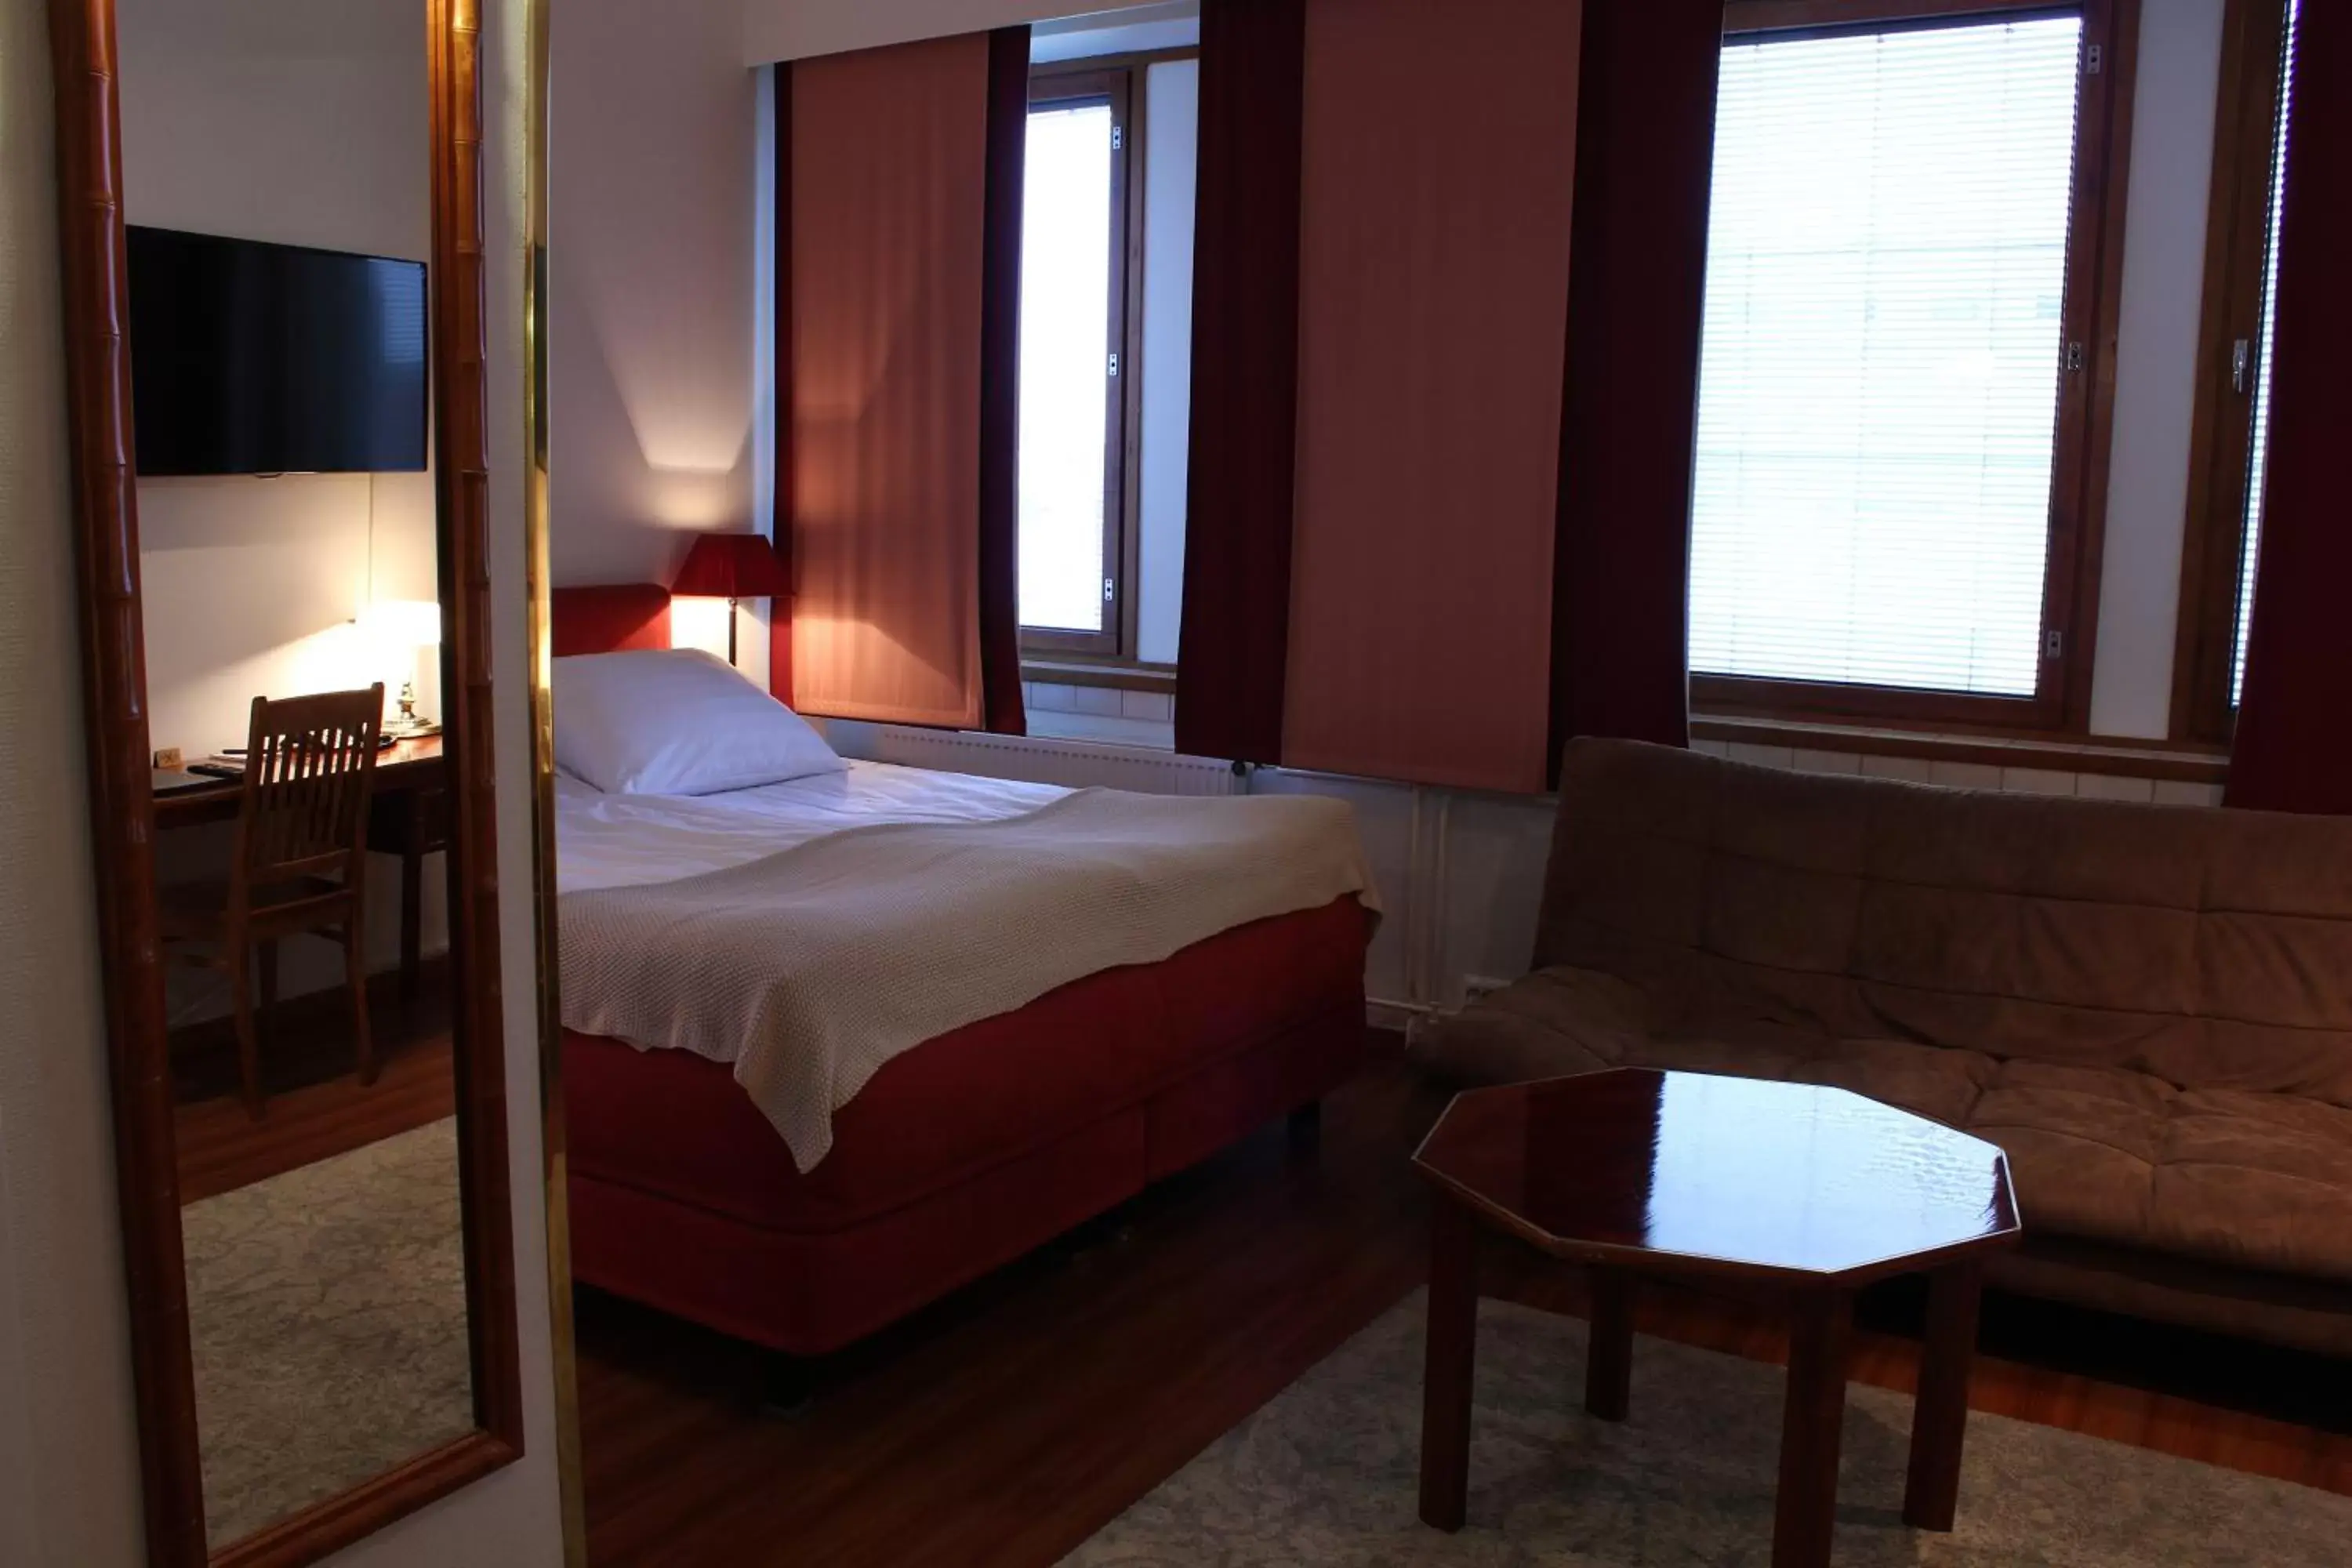 Bedroom, Bed in Best Western Hotel Apollo